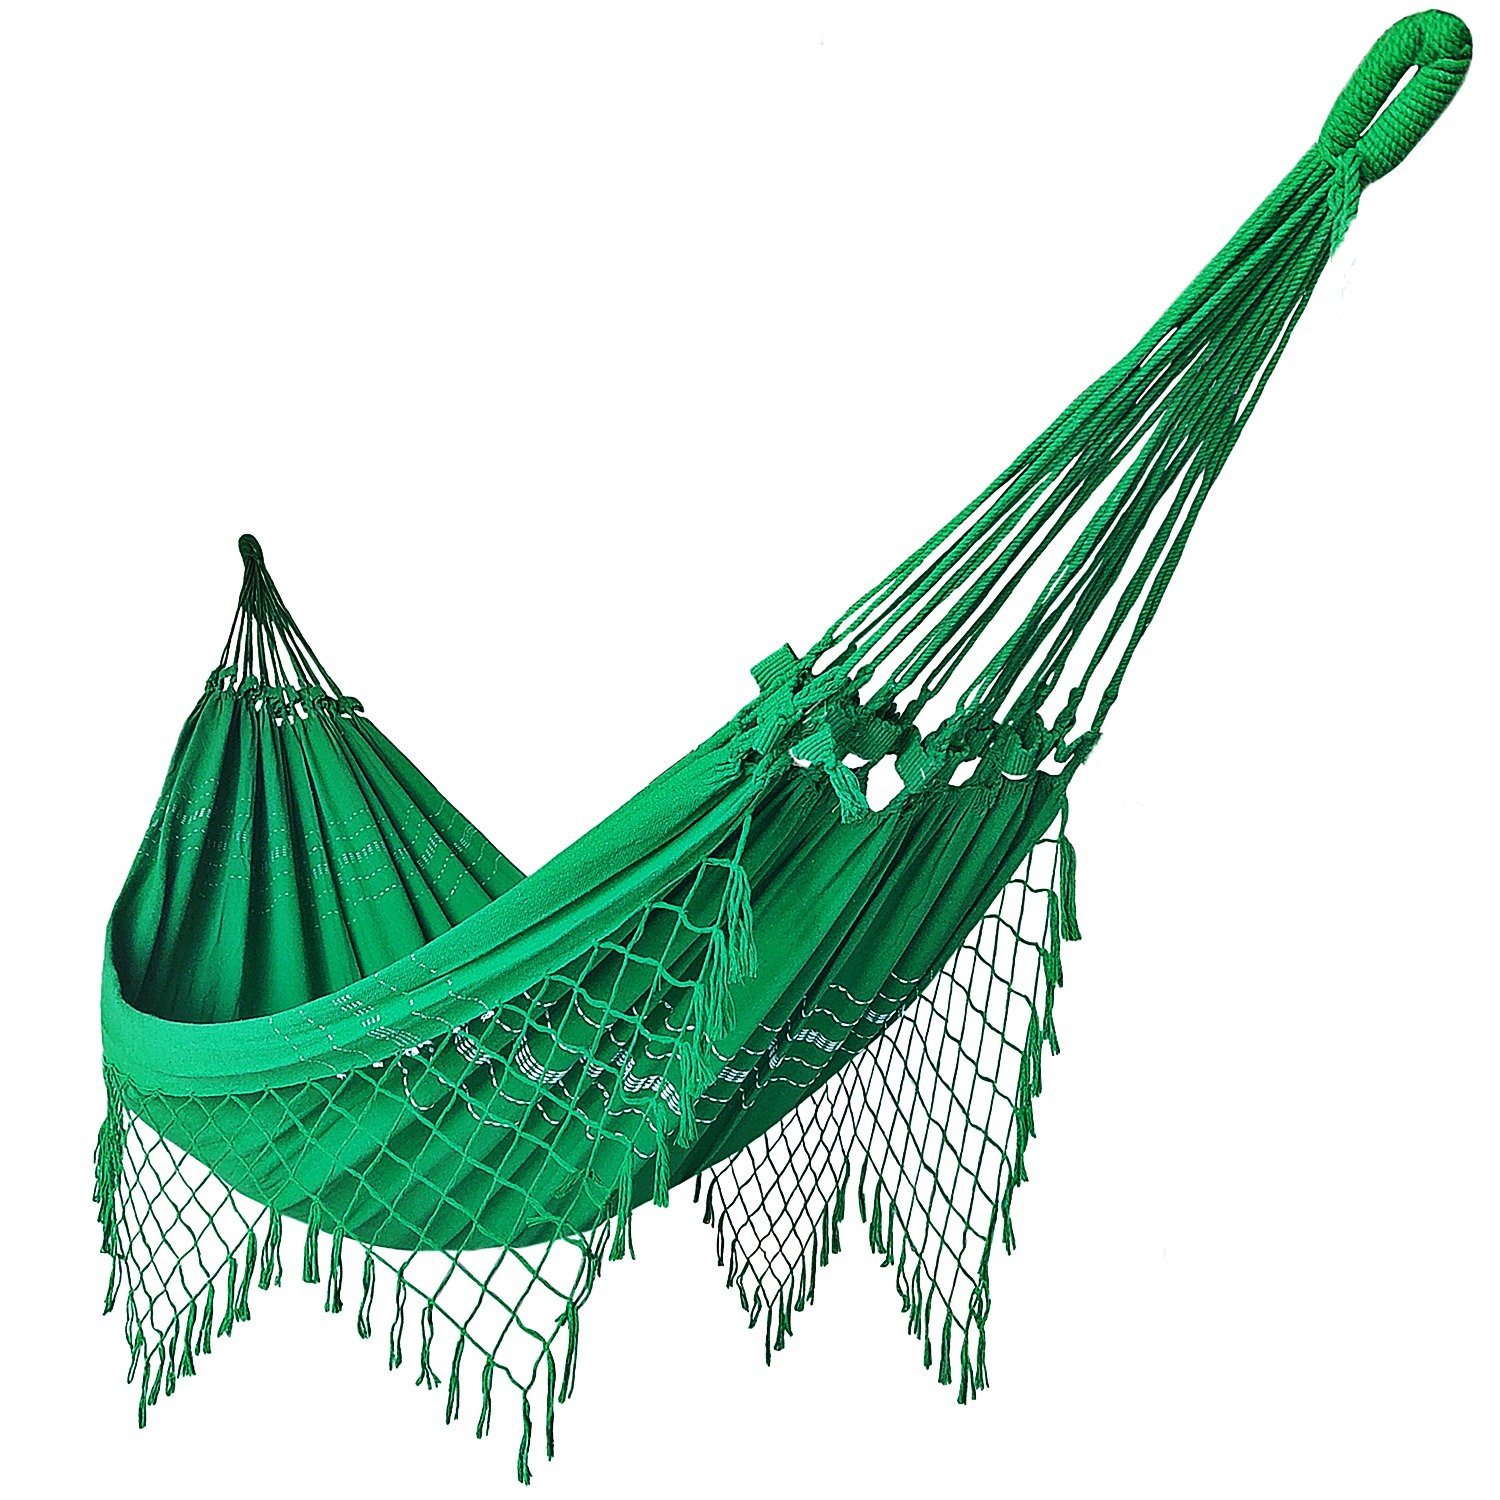 Rede de Dormir Casal Balanço de Algodão Reforçada 3,80m x 1,50m Varias Cores:Verde bandeira